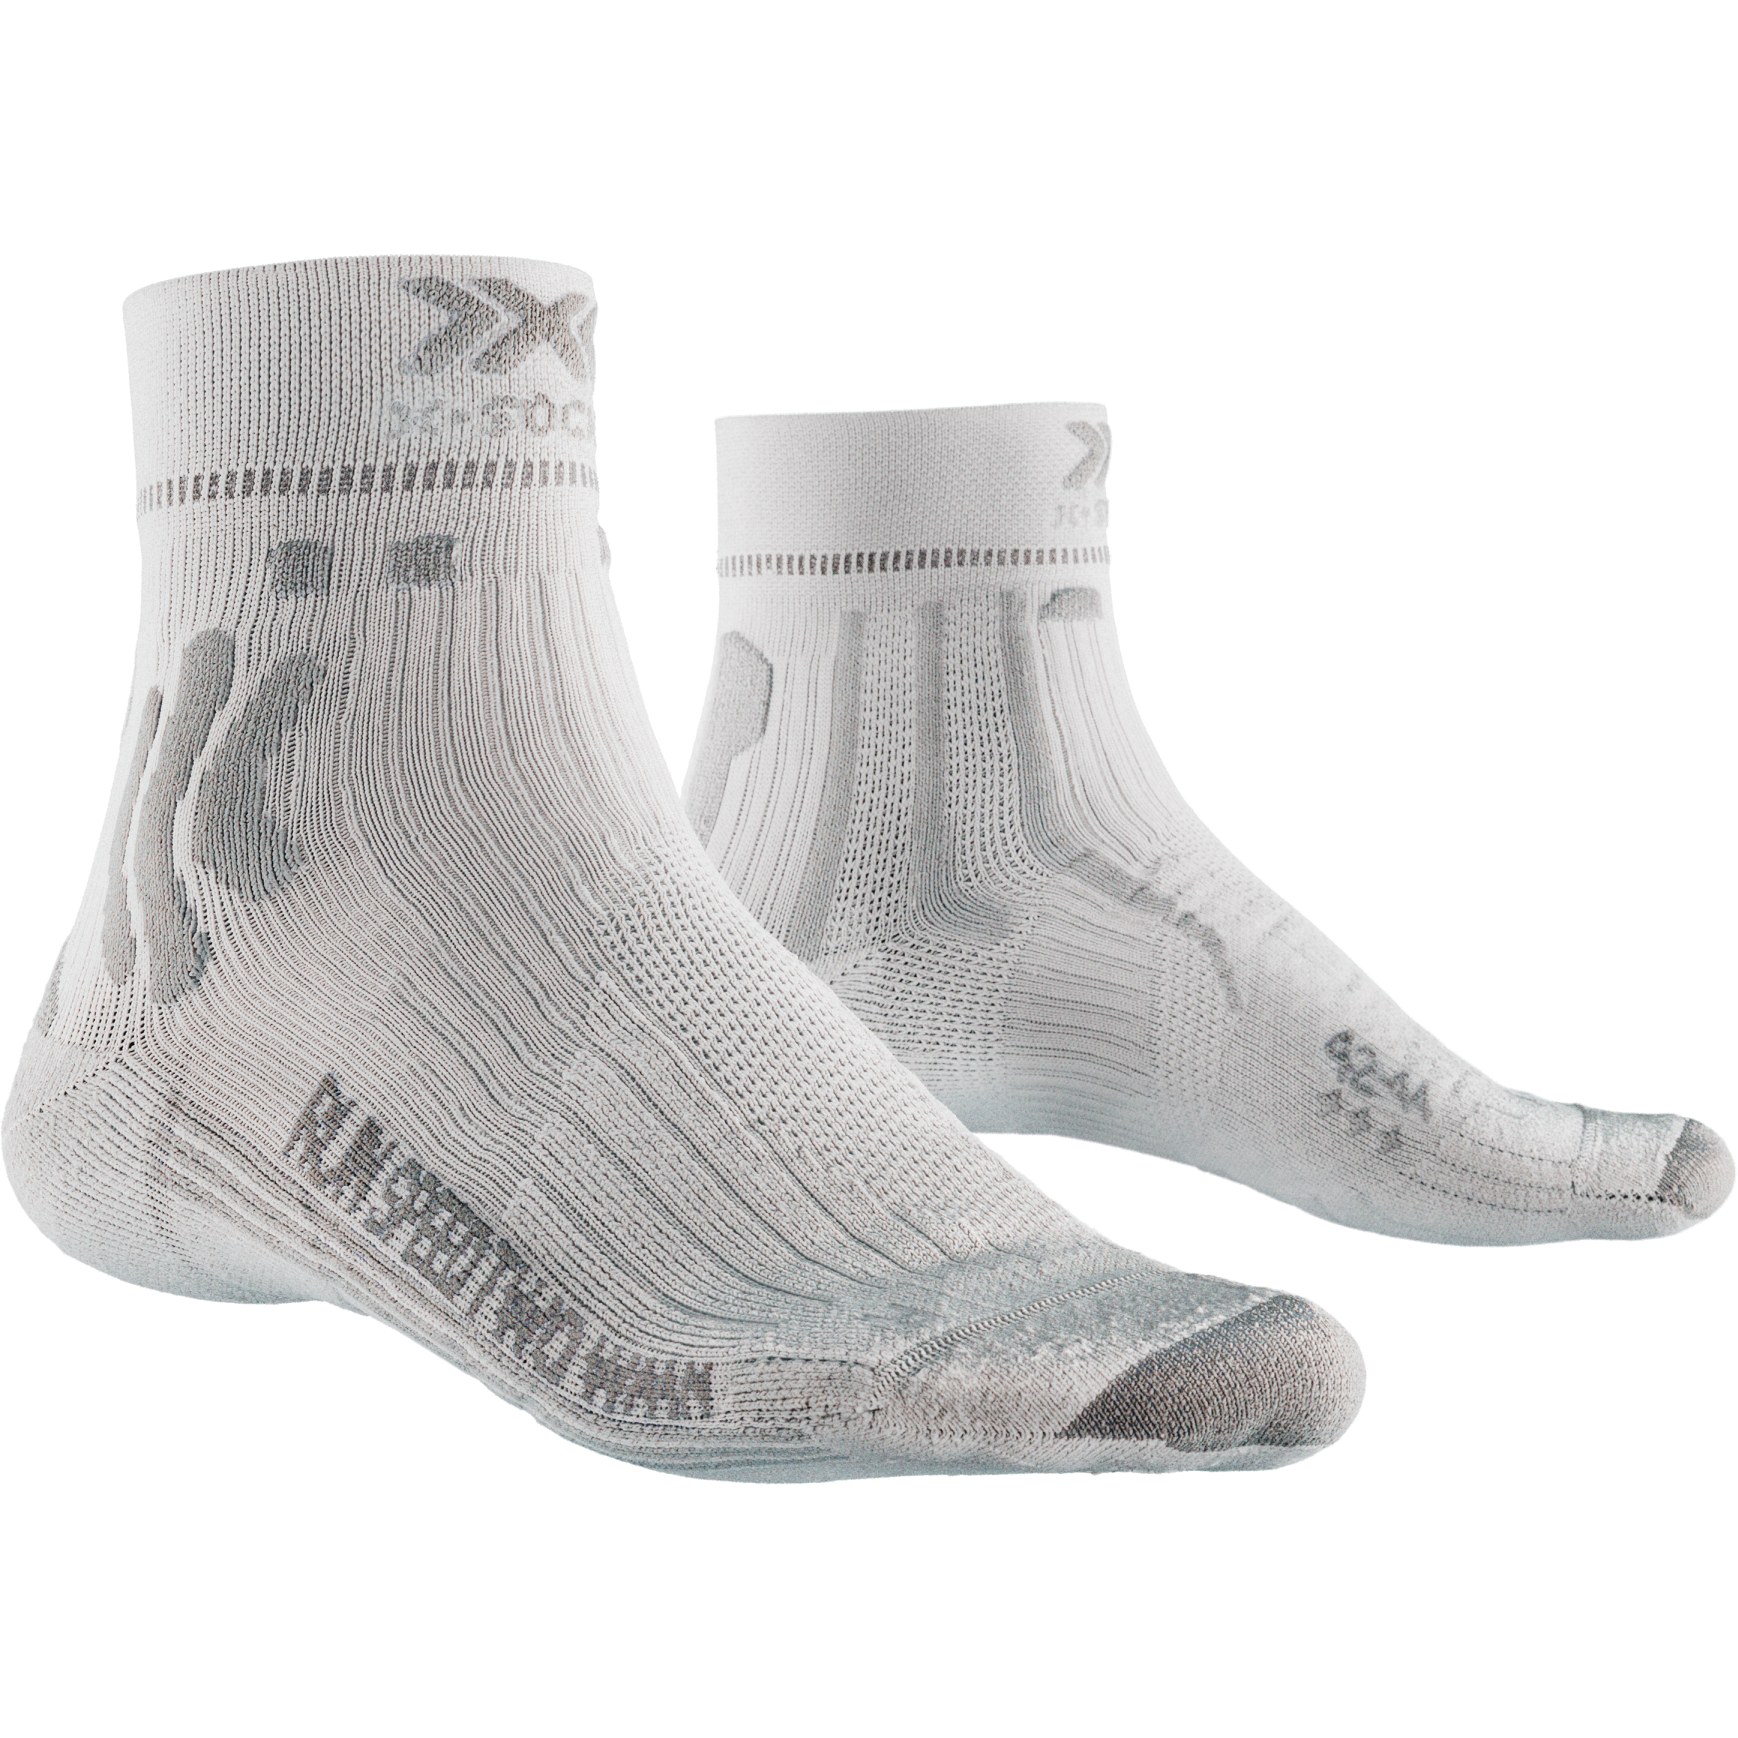 Produktbild von X-Socks Run Speed Two 4.0 Socken für Damen - weiß/grau